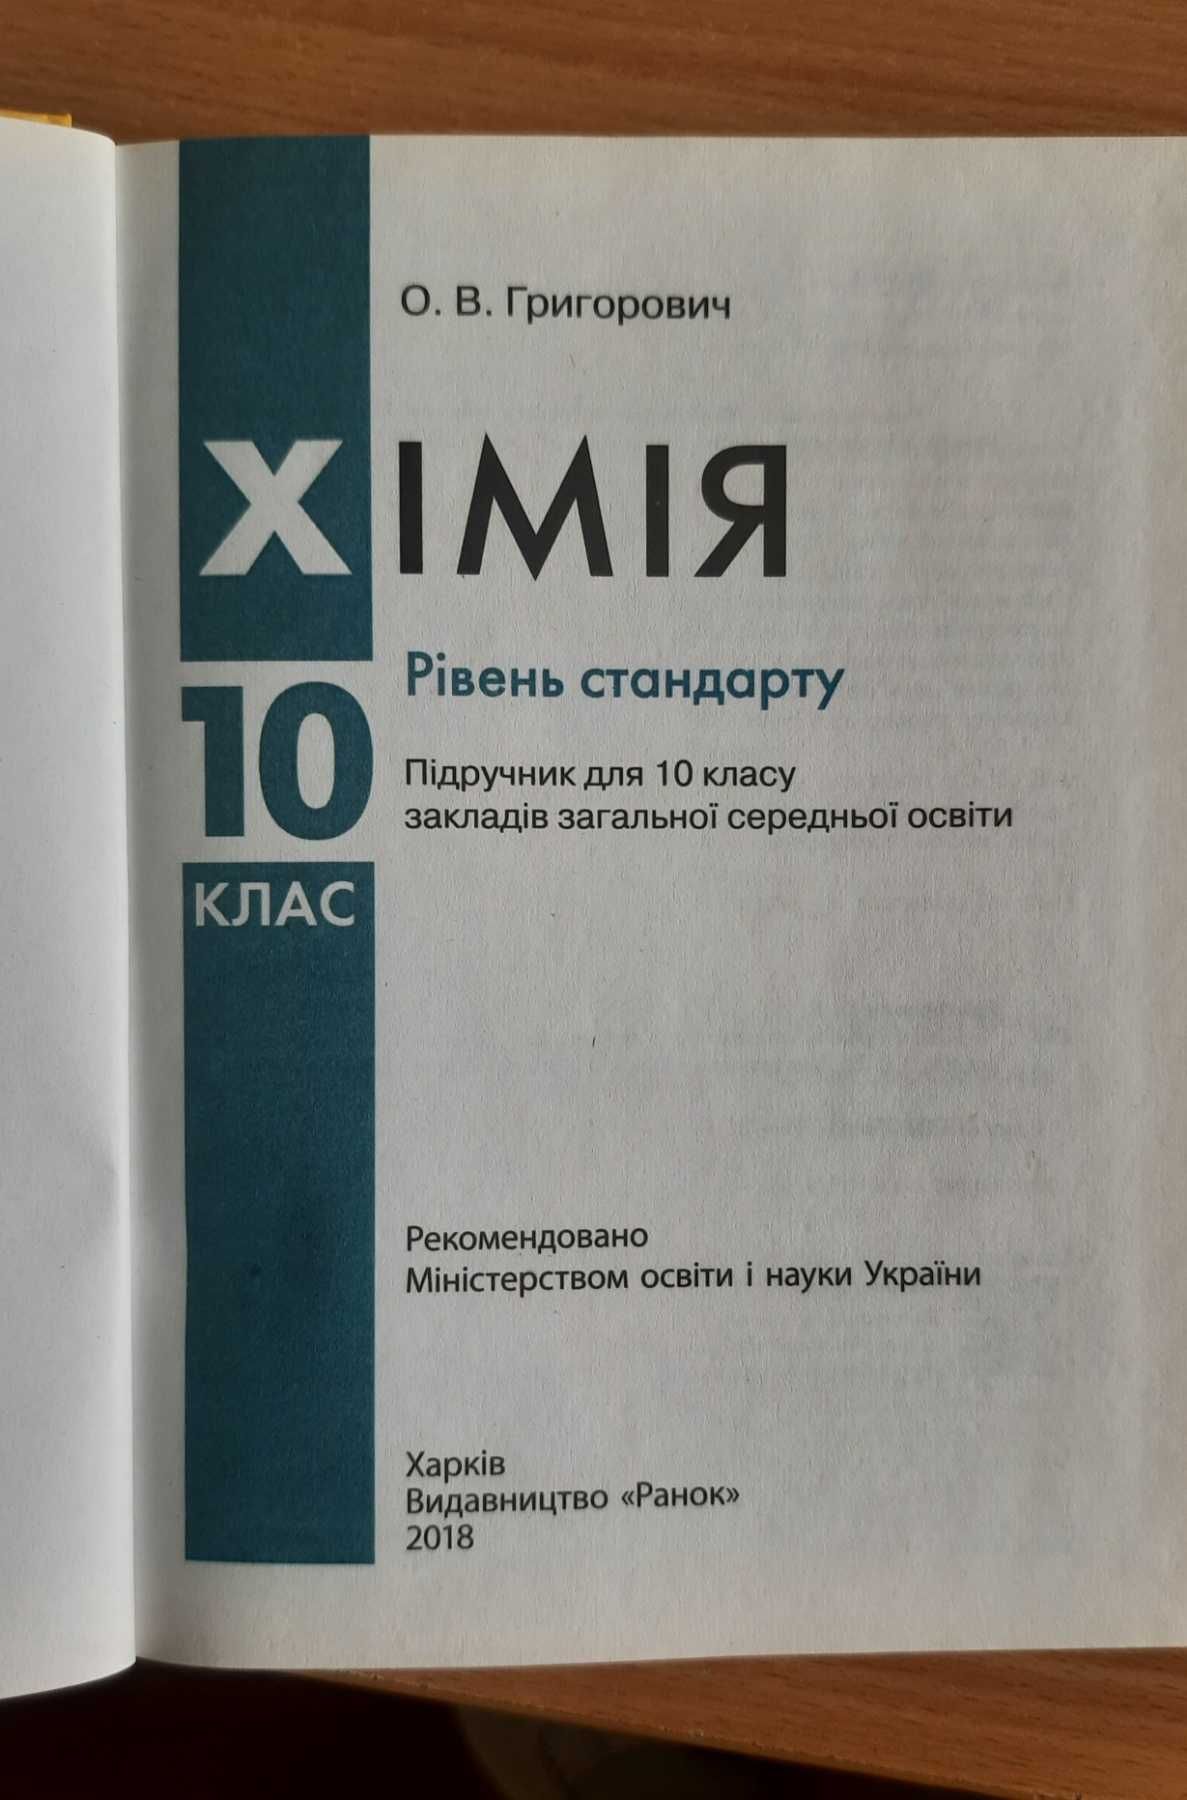 Новый учебник Химия 10 класс Григорович